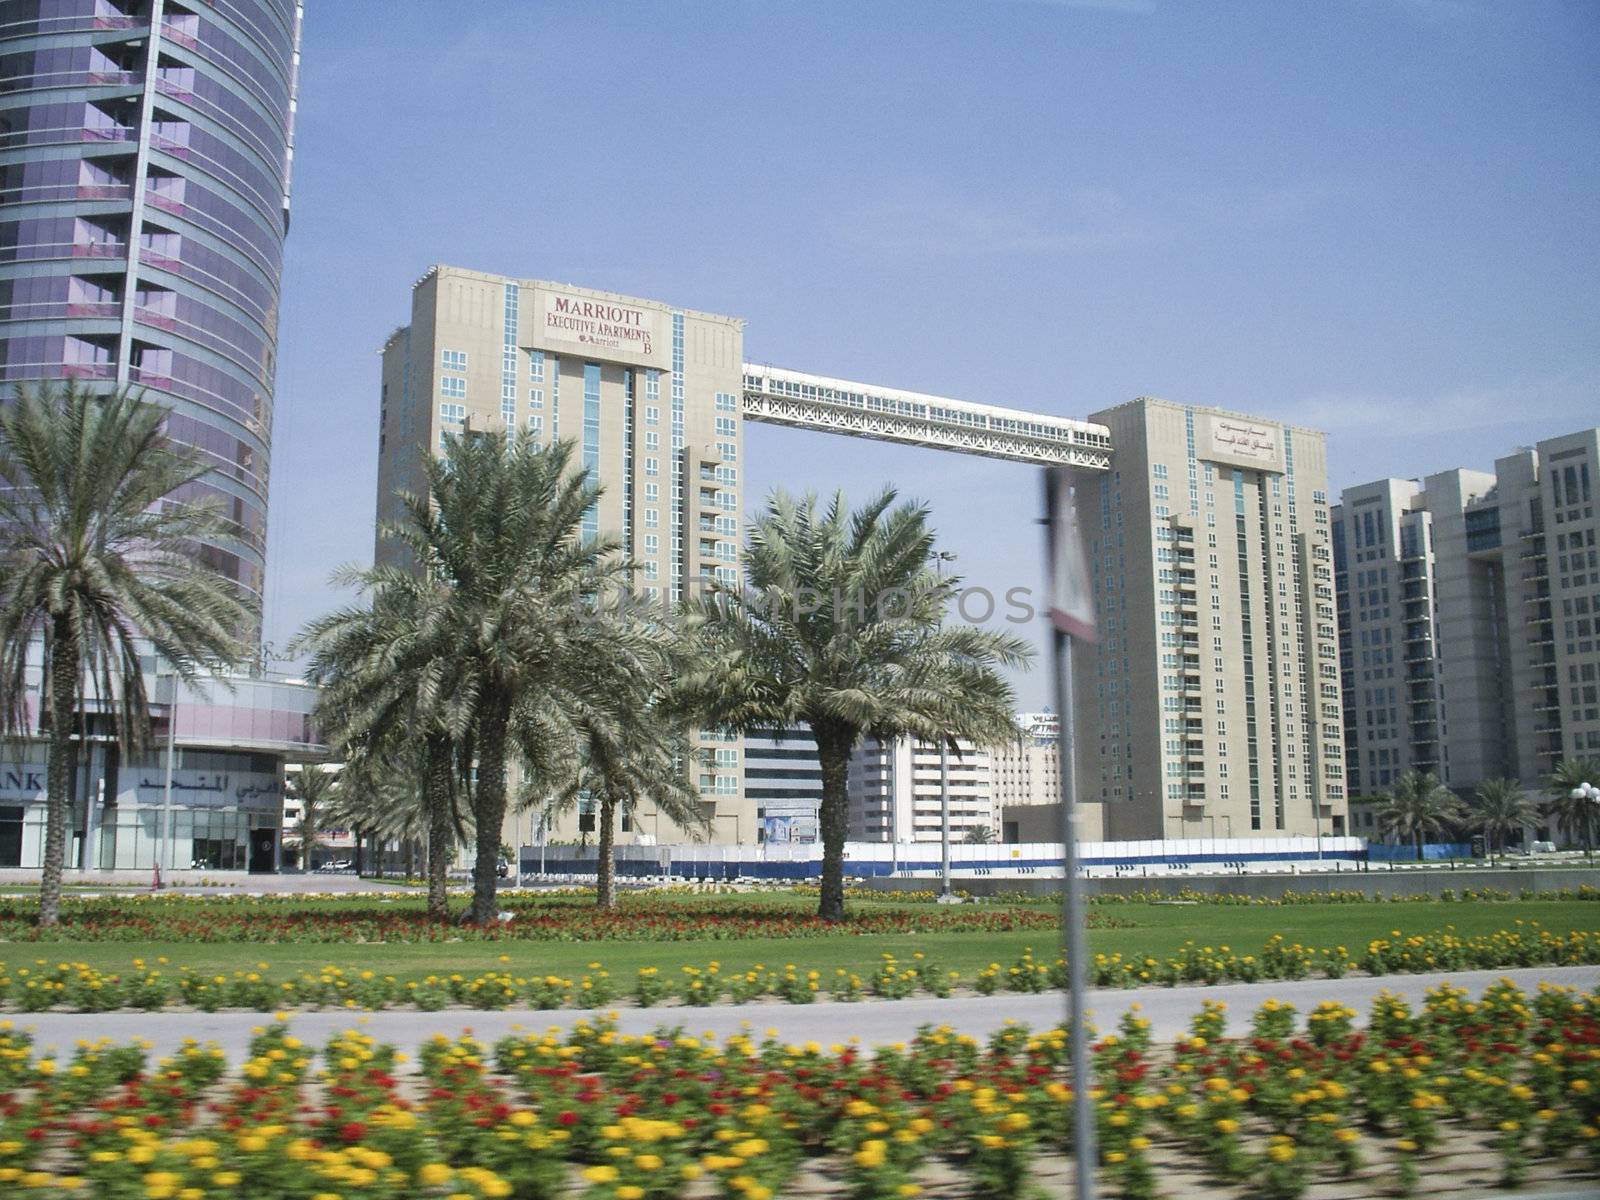 Dubai Building by cvail73